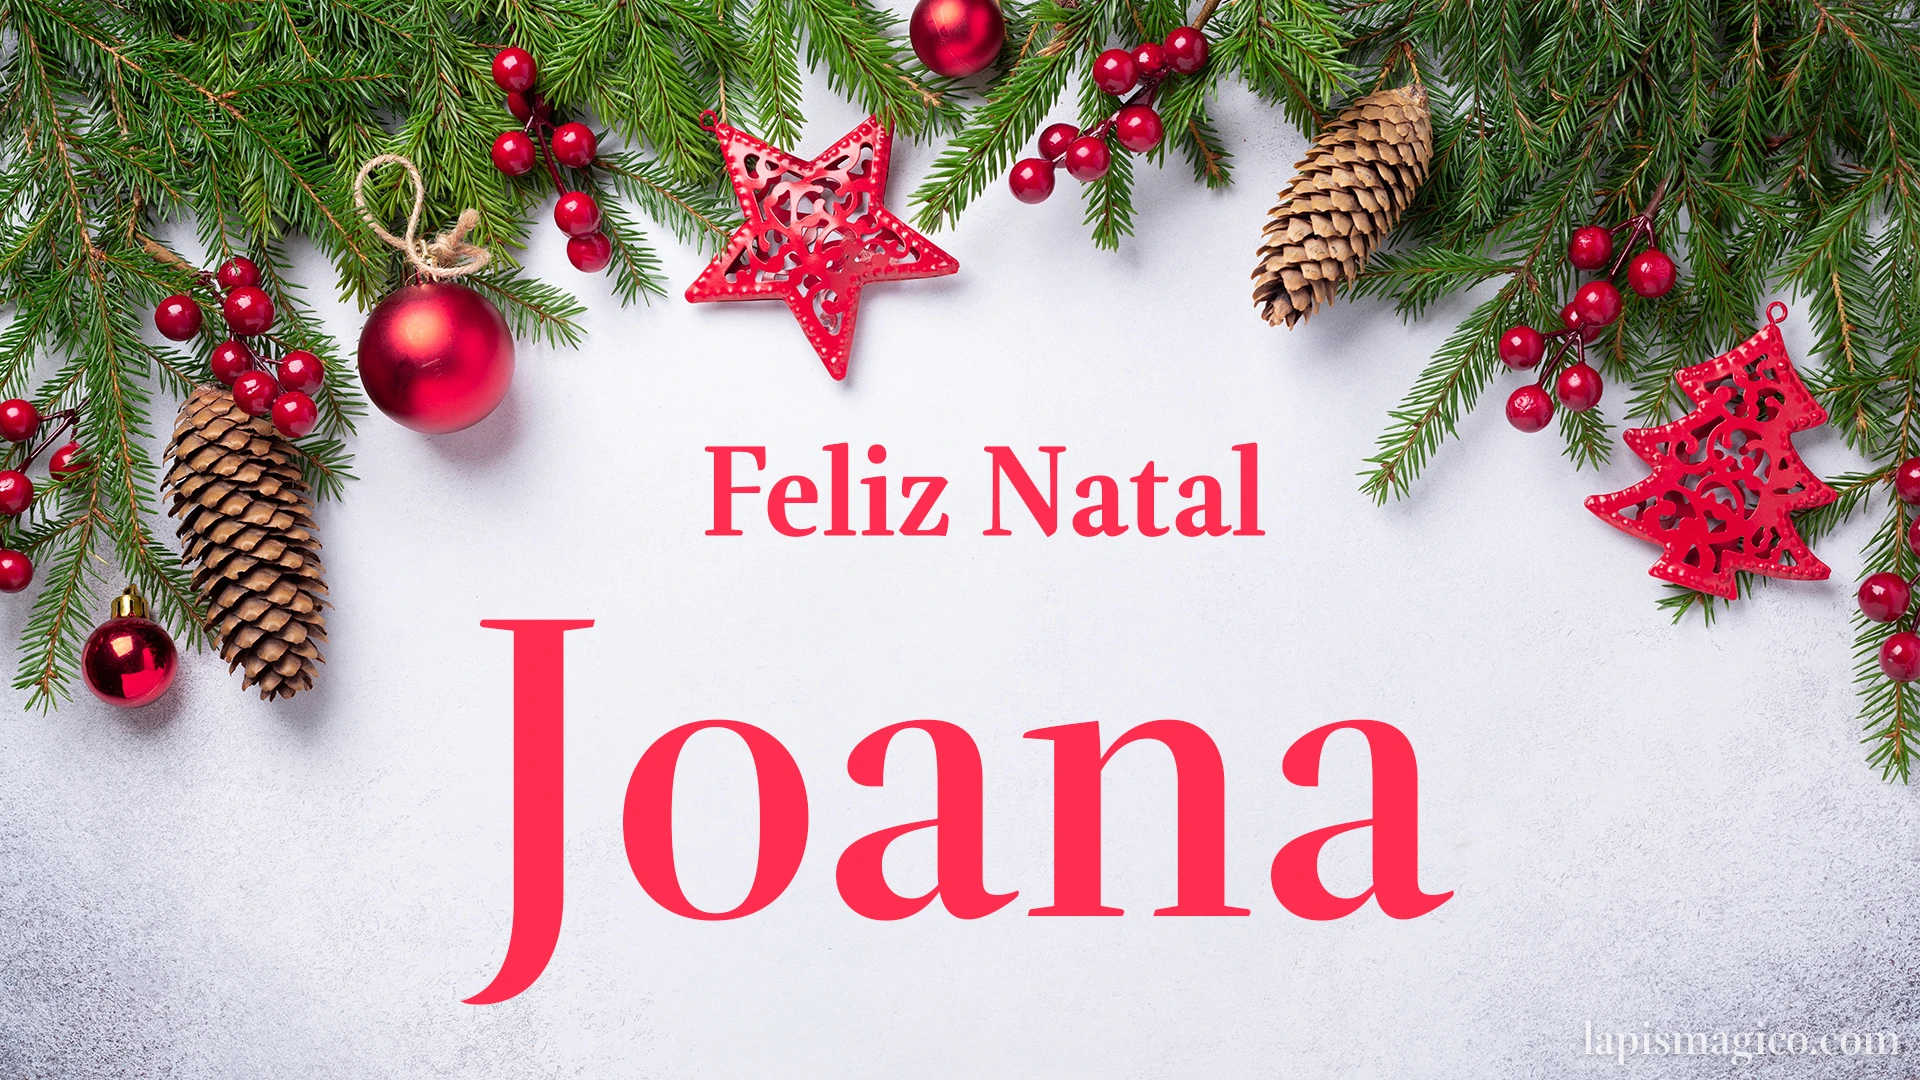 Oh Joana, cinco postais de Feliz Natal Postal com o teu nome